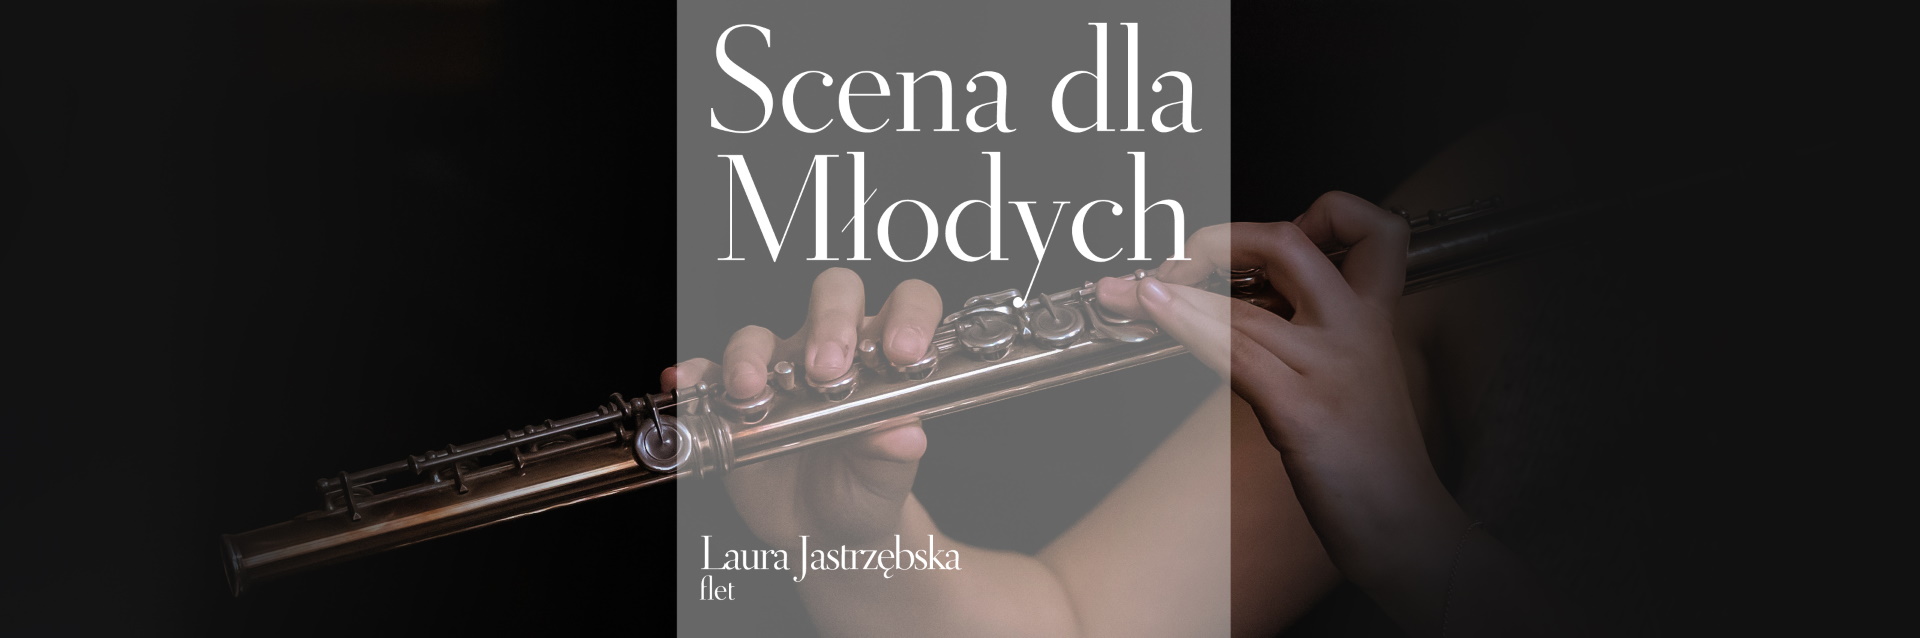 Plakat zapraszający w poniedziałek 8 maja 2023 r. do Olsztyna na koncert Scena dla Młodych Filharmonia Olsztyn 2023.